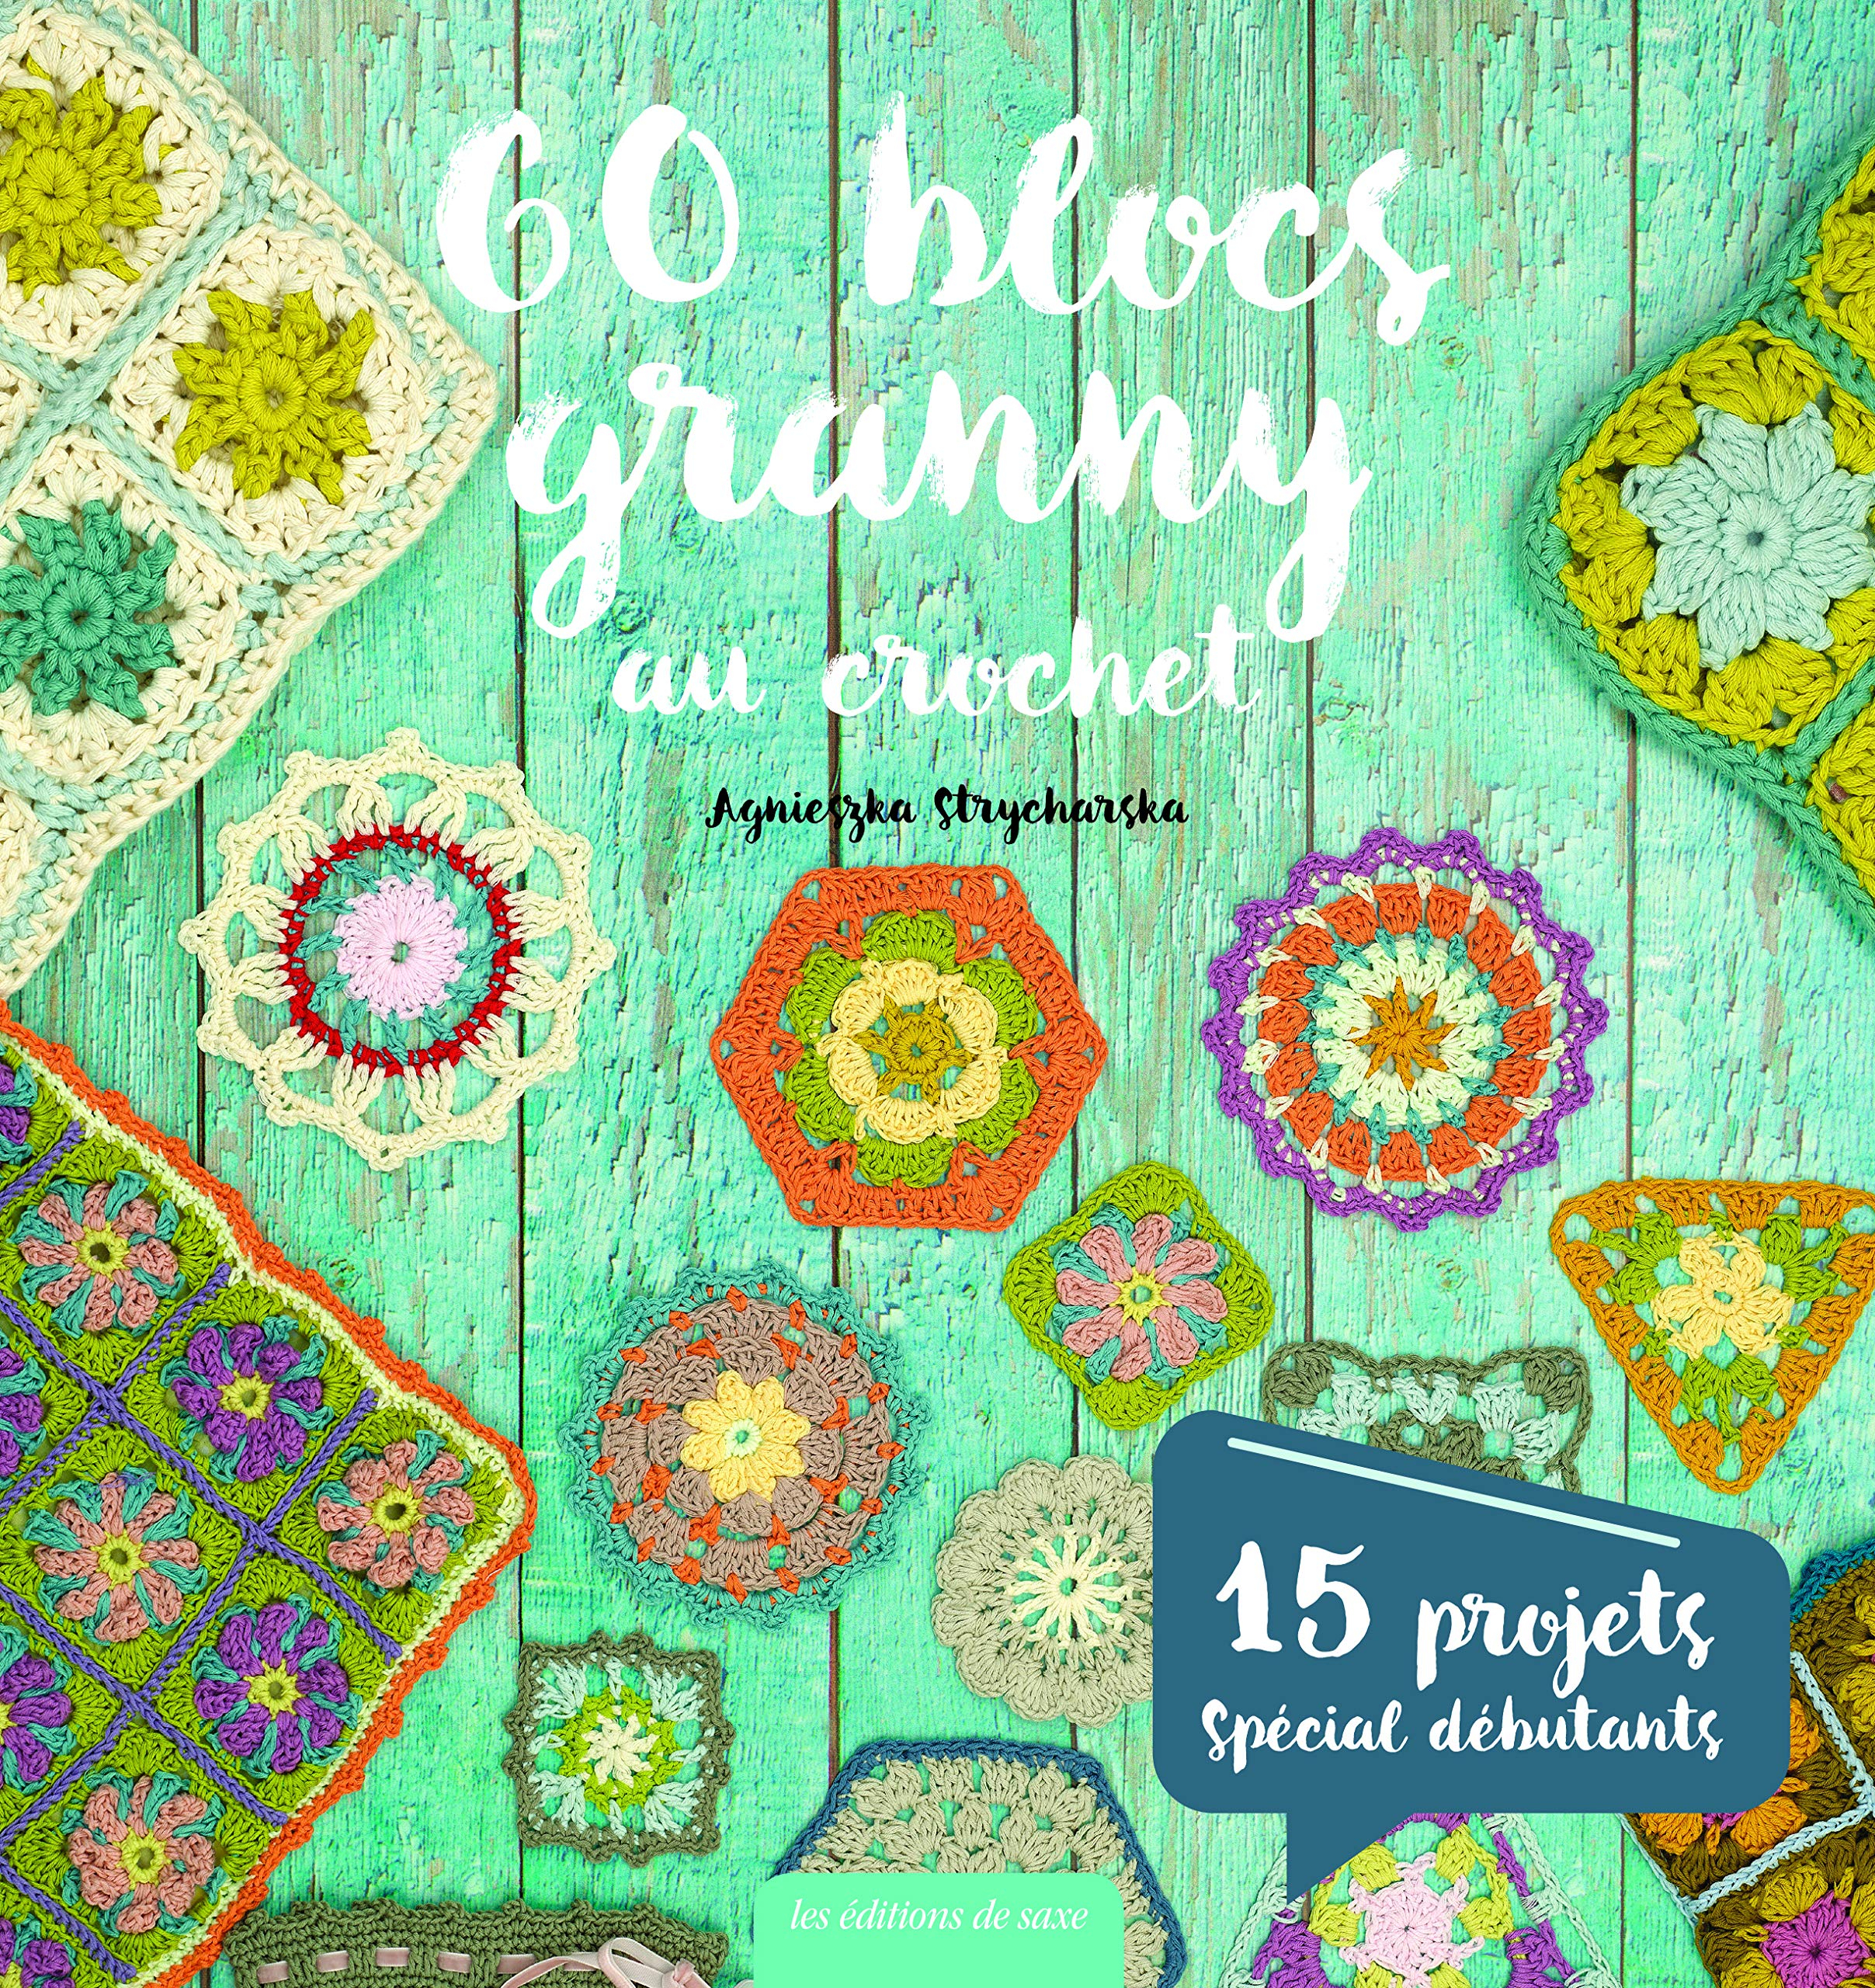 60 blocs granny au crochet : 15 projets spécial débutants